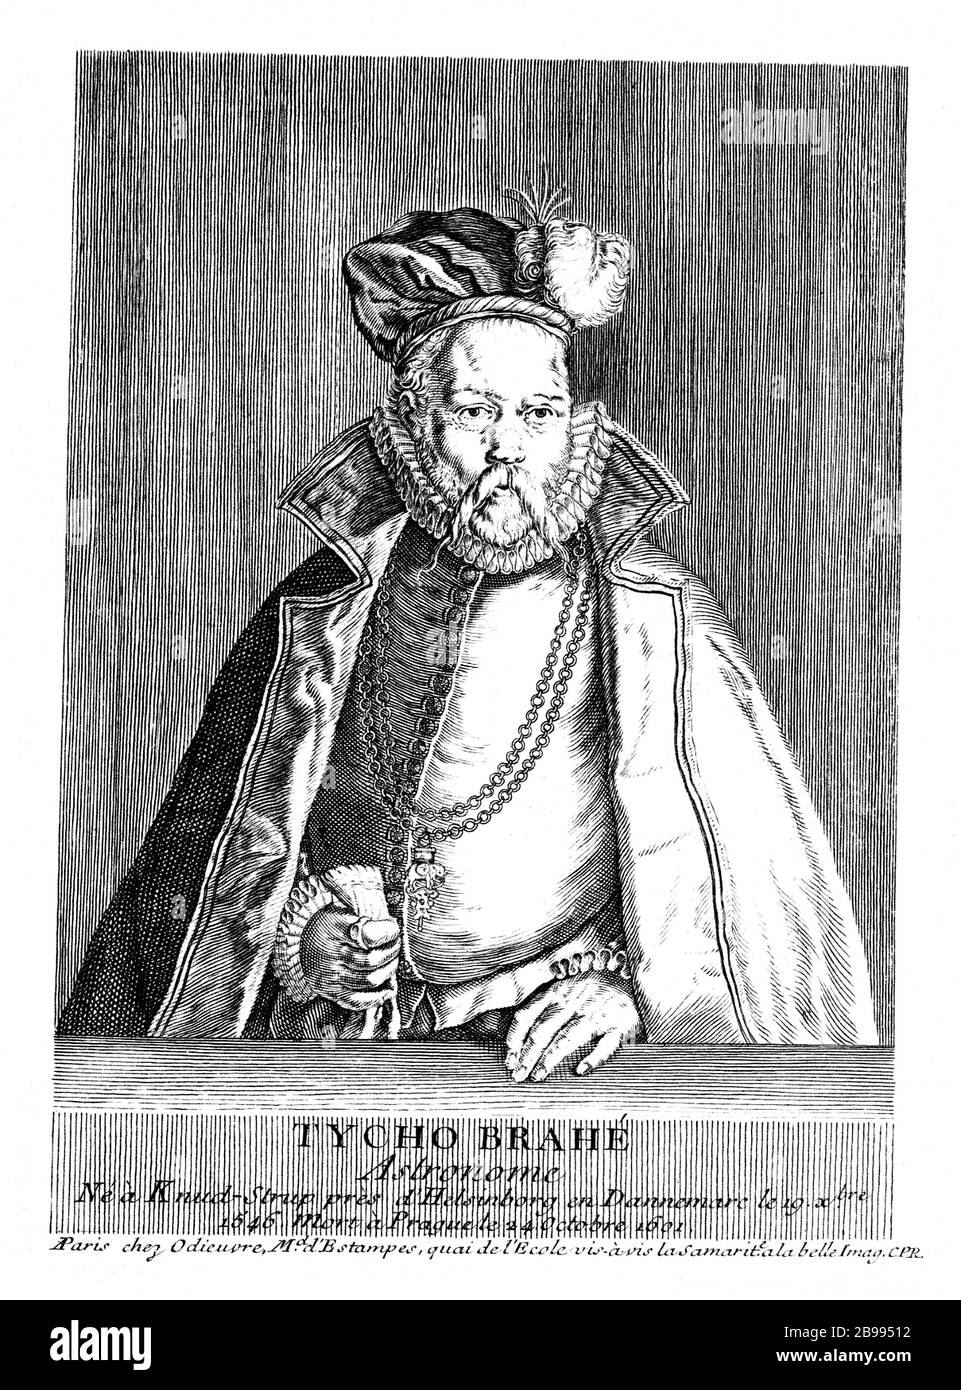 1601 ca , DANIMARCA : il celebre nobiluomo danese astronomo , astrologo , chimico , alchimista e inventore TYCHO BRAHE aka Tyge Brahe ( 1546 – 1601 ) . Incisione portait di artista sconosciuto, stampata nel 1755 . Nota per le sue accurate e complete osservazioni astronomiche e planetarie . - TICONE - SCIENZA - ASTROLOGO - Ritratto - ritratto - barba - barba - scienziato - scienziato - ASTRONOMIA - ASTRONOMO - ASTRONOMIA - SCIENZIATO - SCIENZIATO - incisione - allevamento - illustrazione - illustrazione - collare - colletto a gorgiera - CHIMICO - CHIMICA - INVENTORE - catena d'oro - j Foto Stock